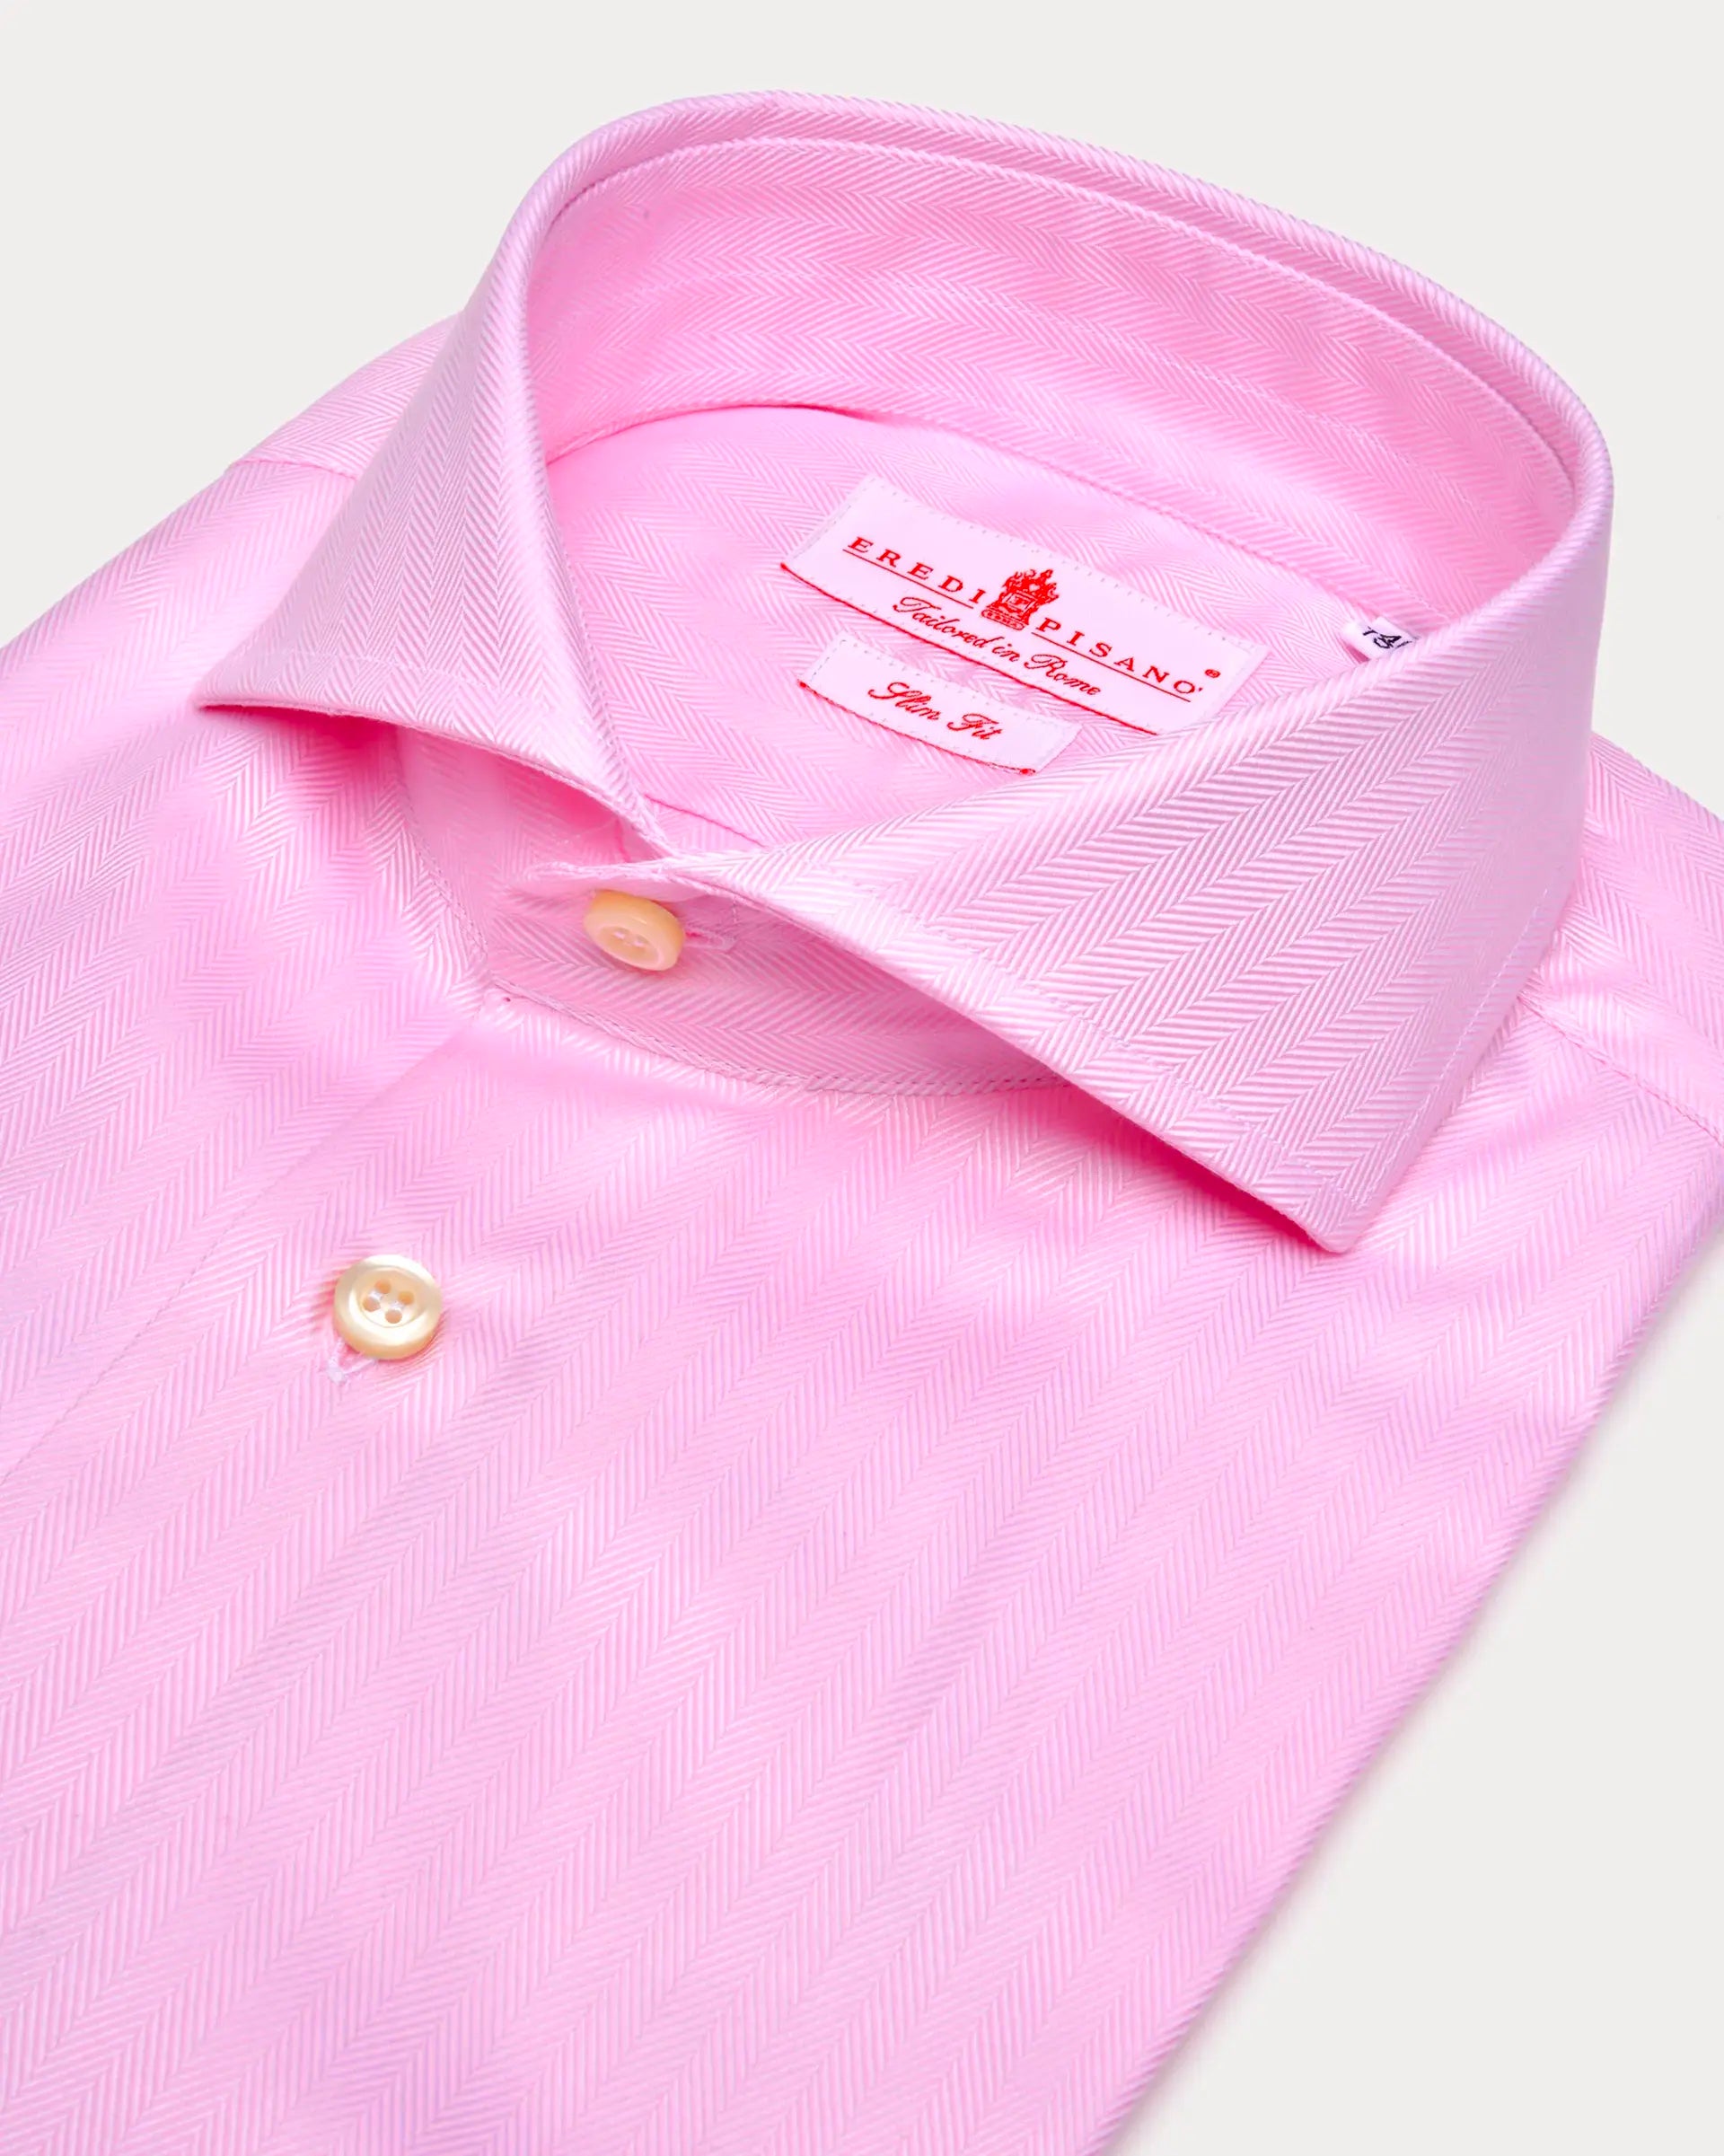 Camicia rosa twill spinata slim fit collo Venezia